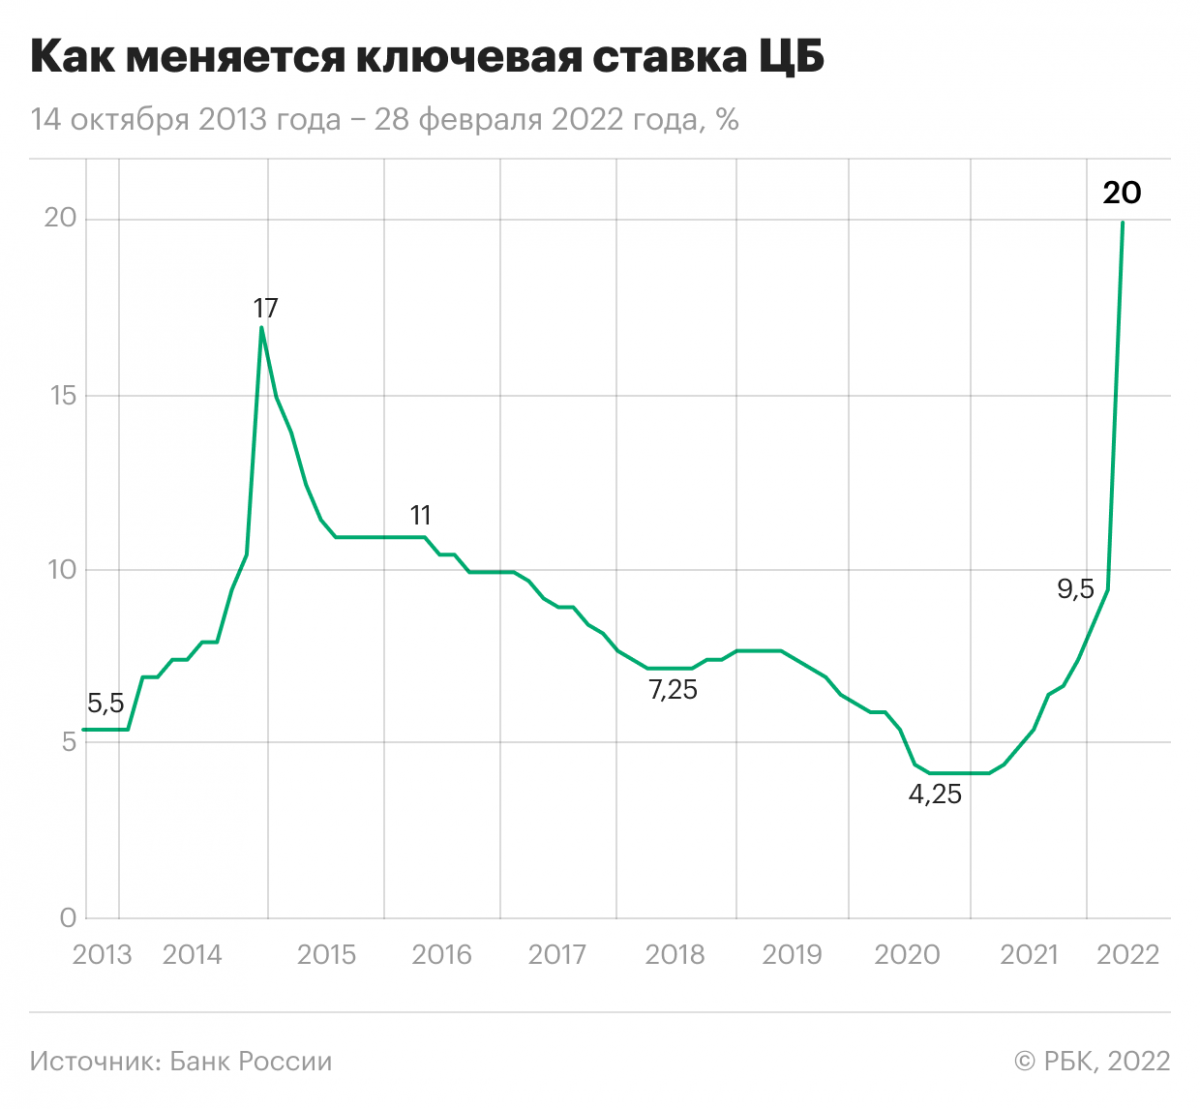 Как менялась ключевая ставка Банка России